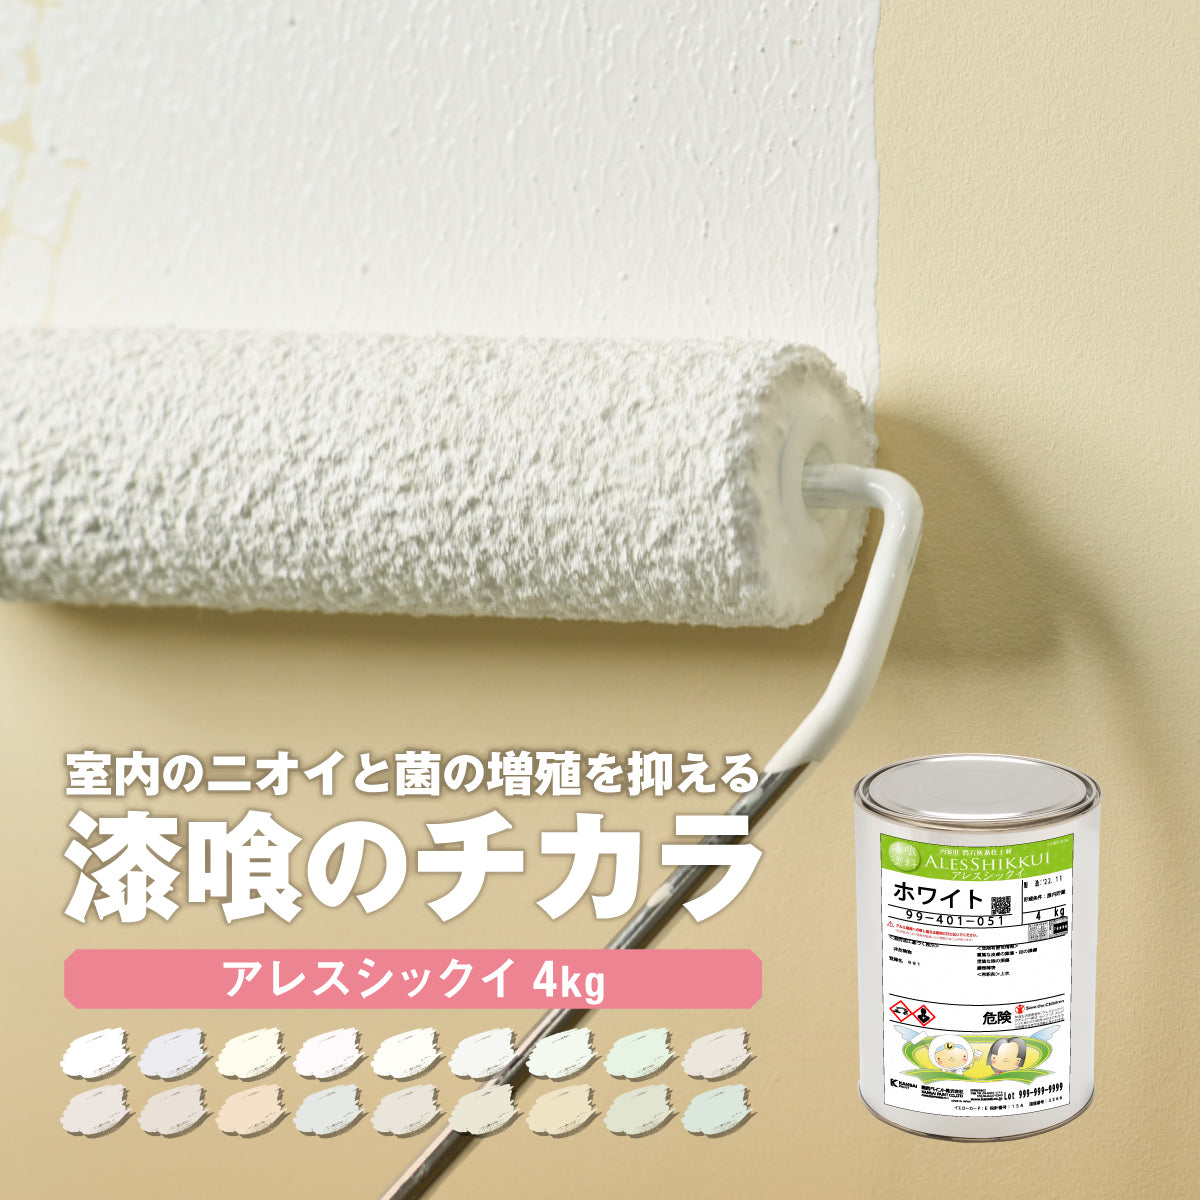 関西ペイント アレスシックイ 漆喰 ホワイト 4kg - 4